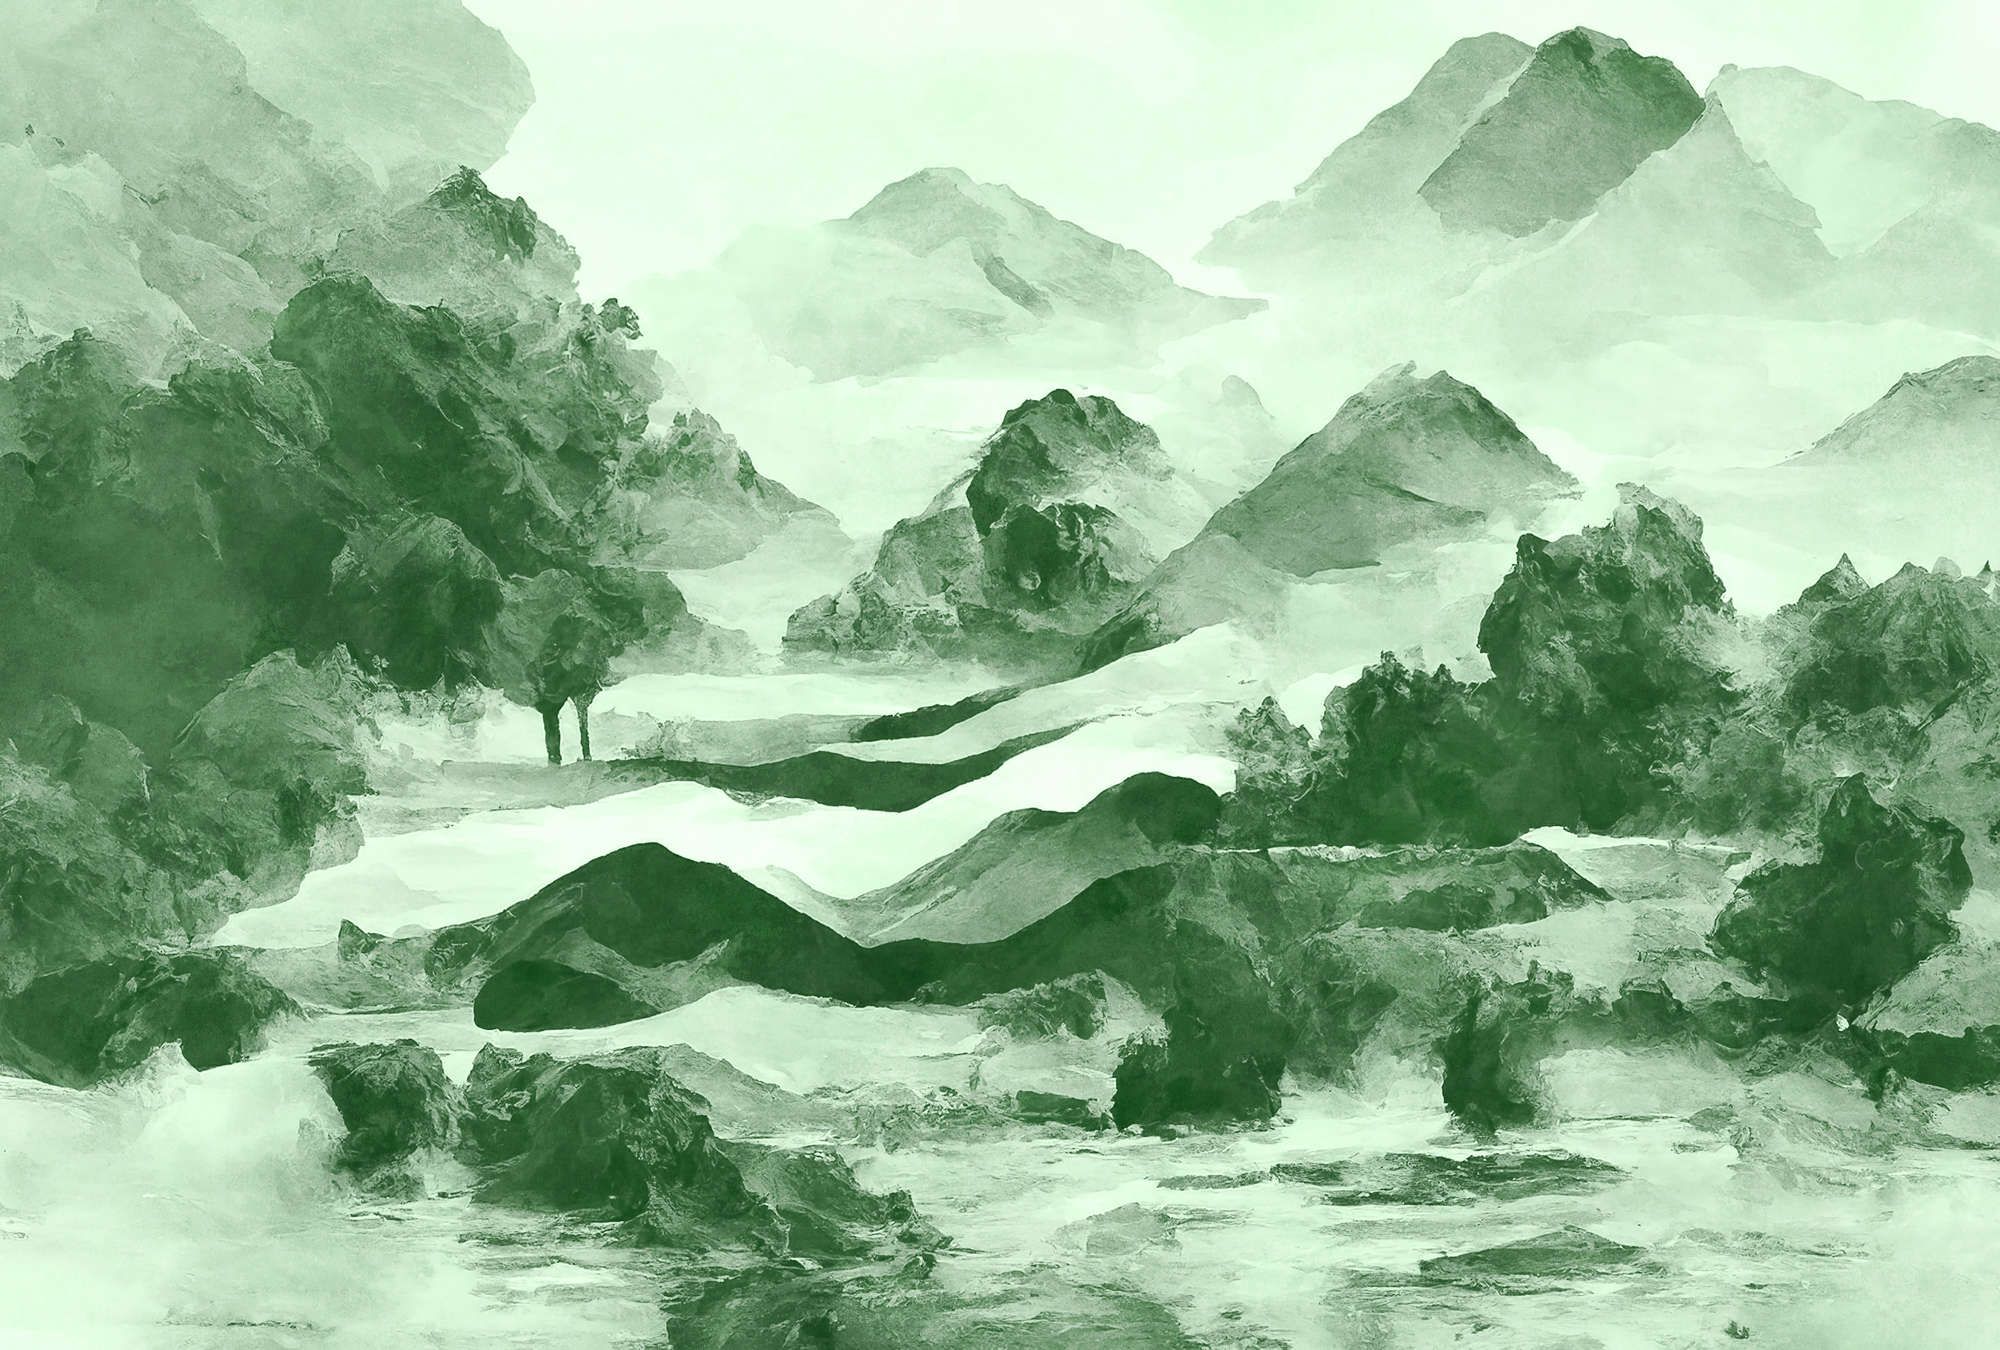             Fotomural »tinterra 2« - Paisaje con montañas y niebla - Verde | Tela sin tejer lisa, ligeramente nacarada y brillante
        